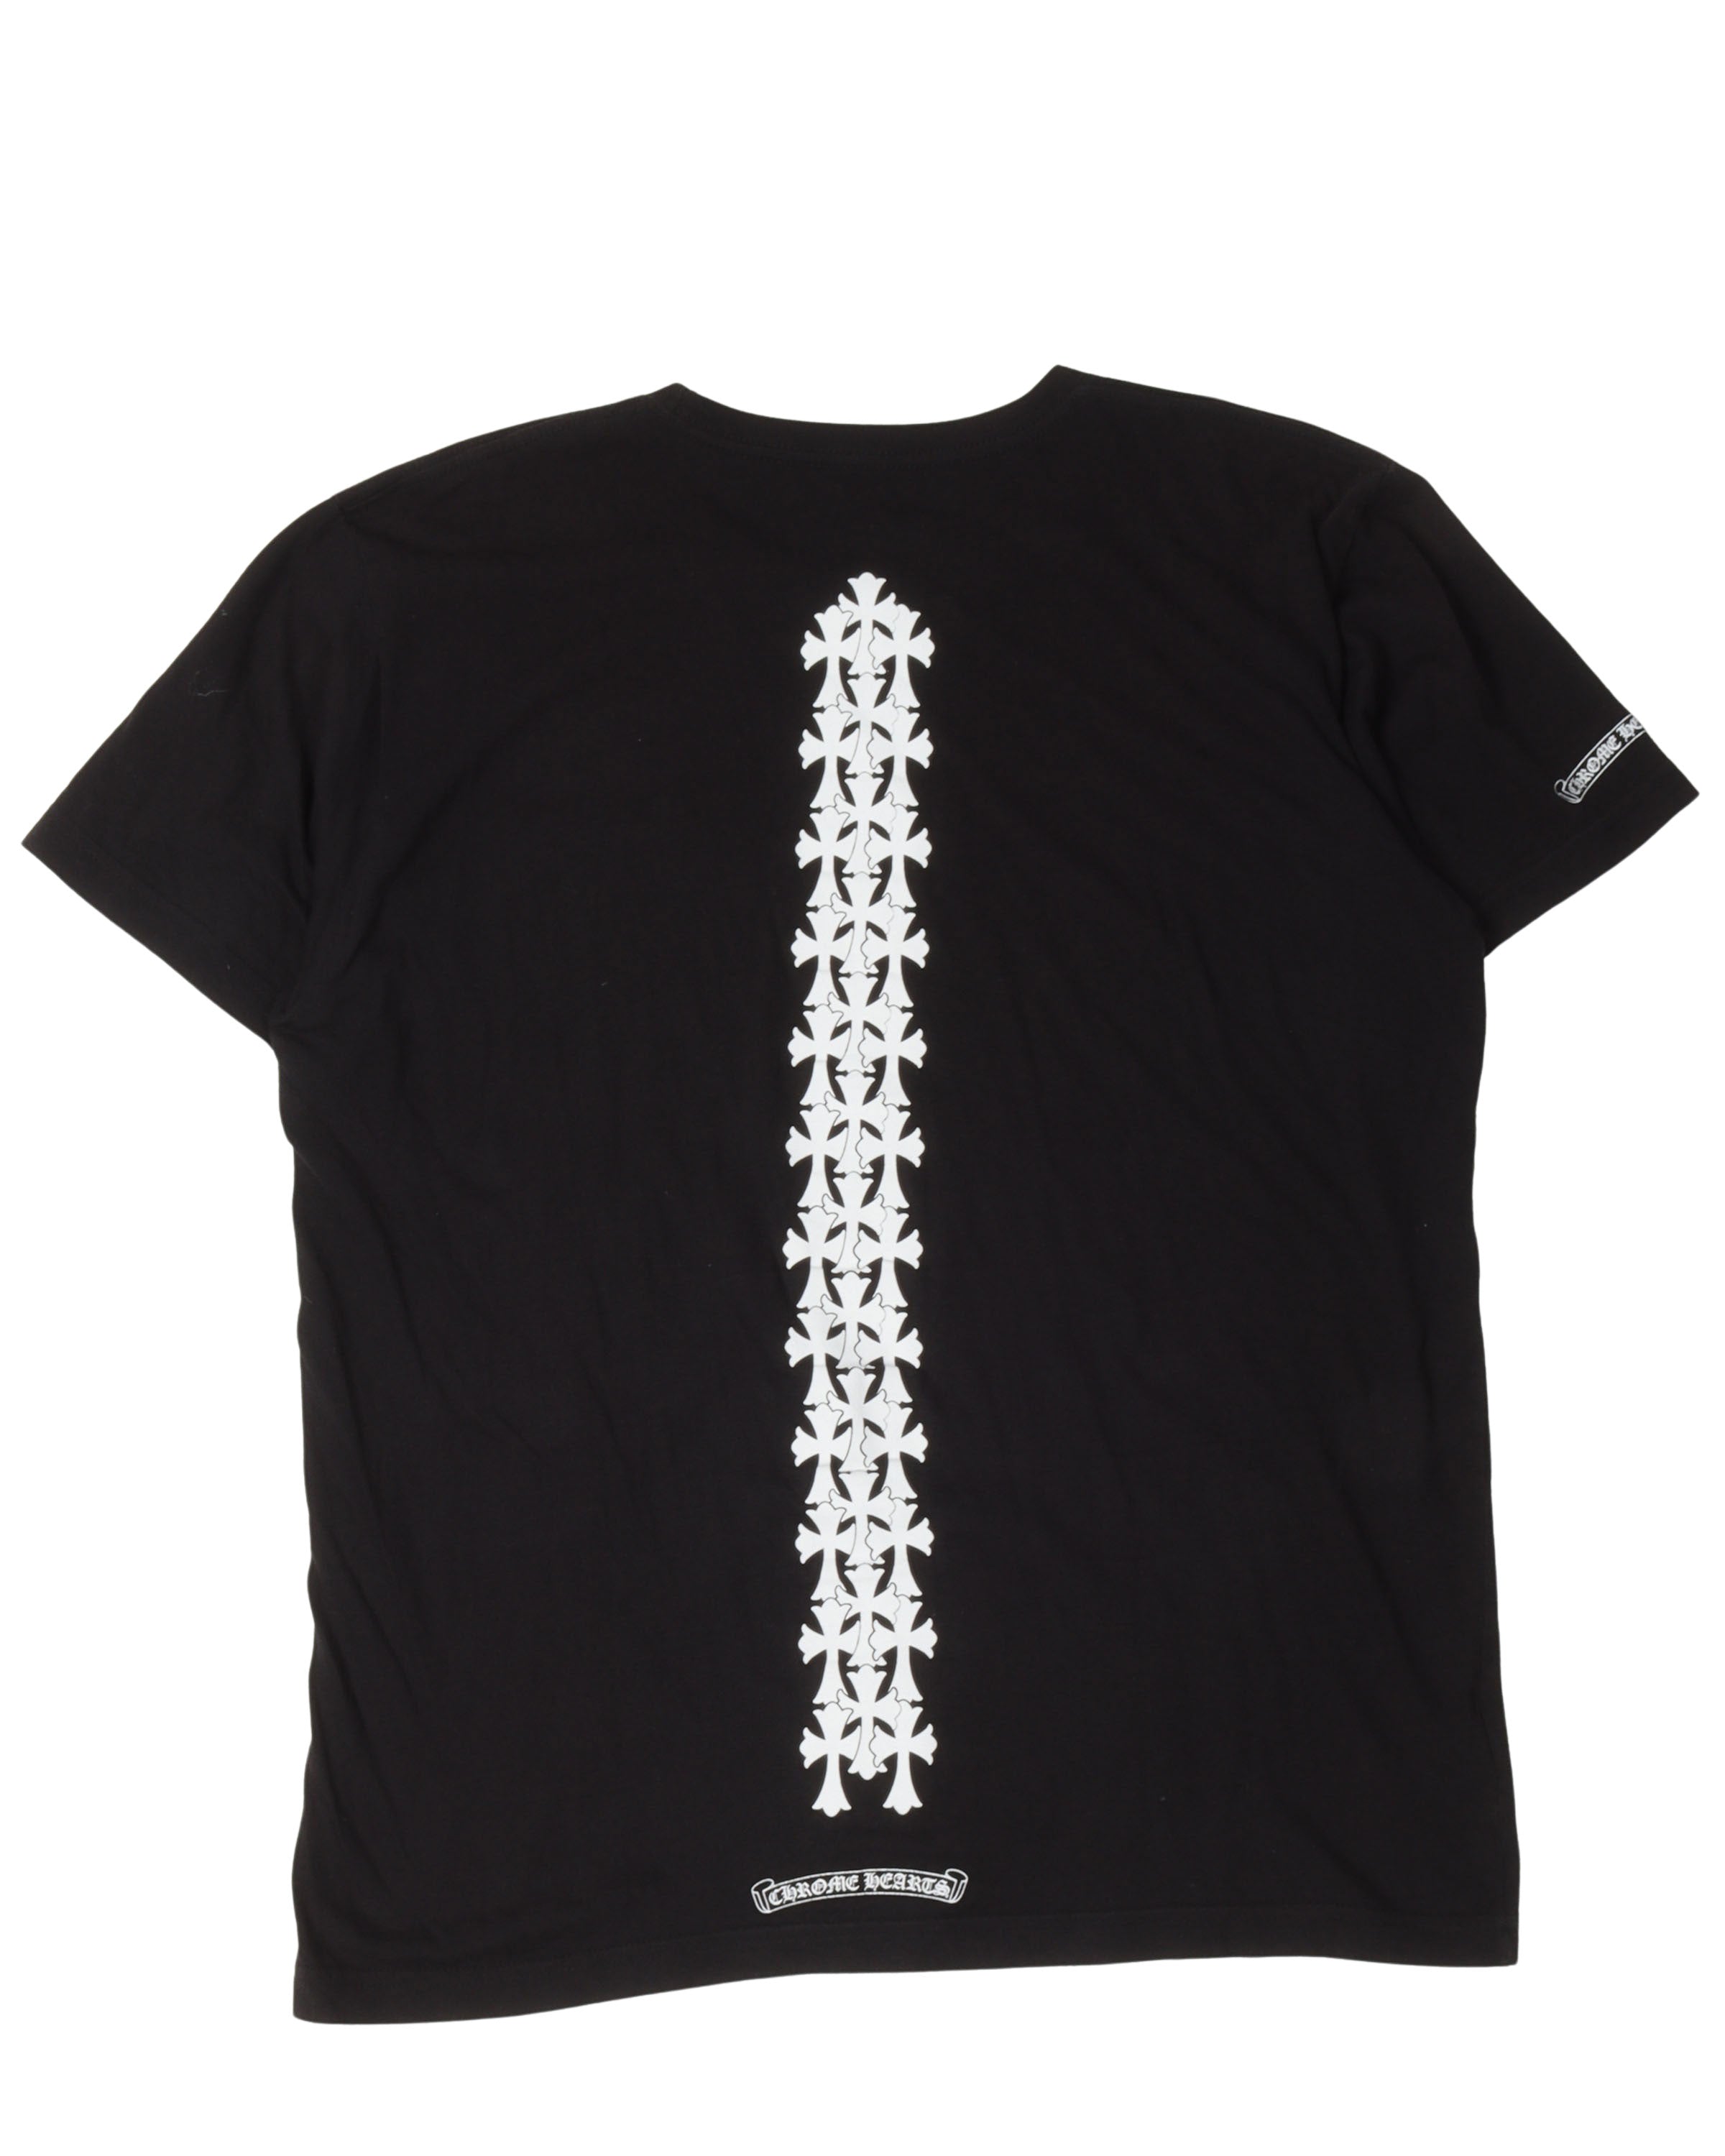 Spine Cross T-Shirt